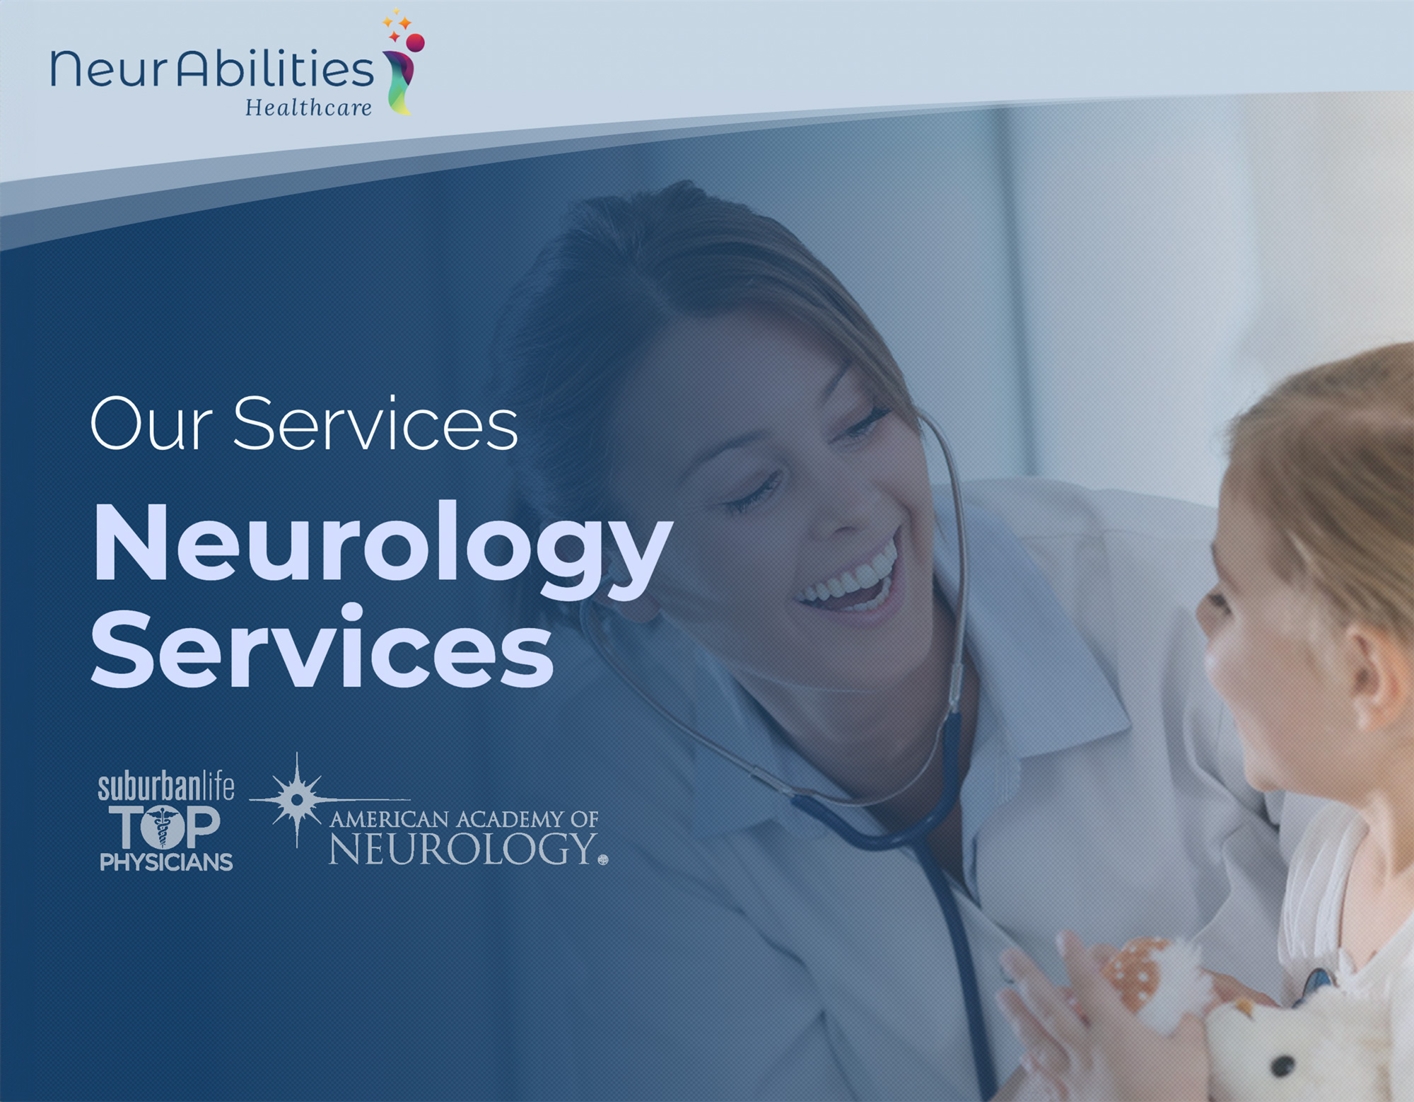 neurology-312423.jpg